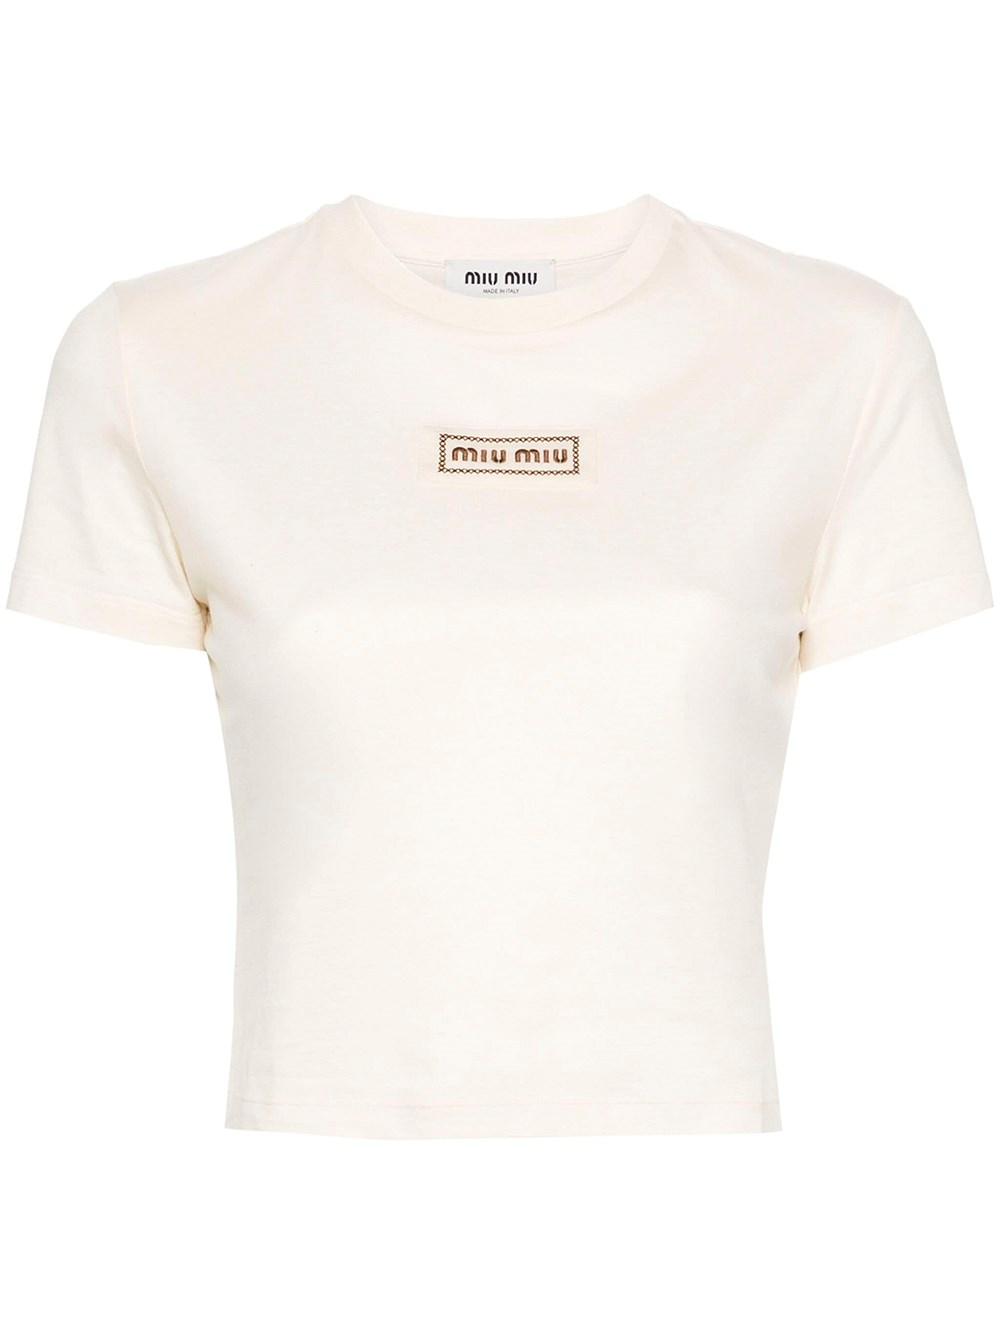 Miu Miu Cropped T-shirt In White